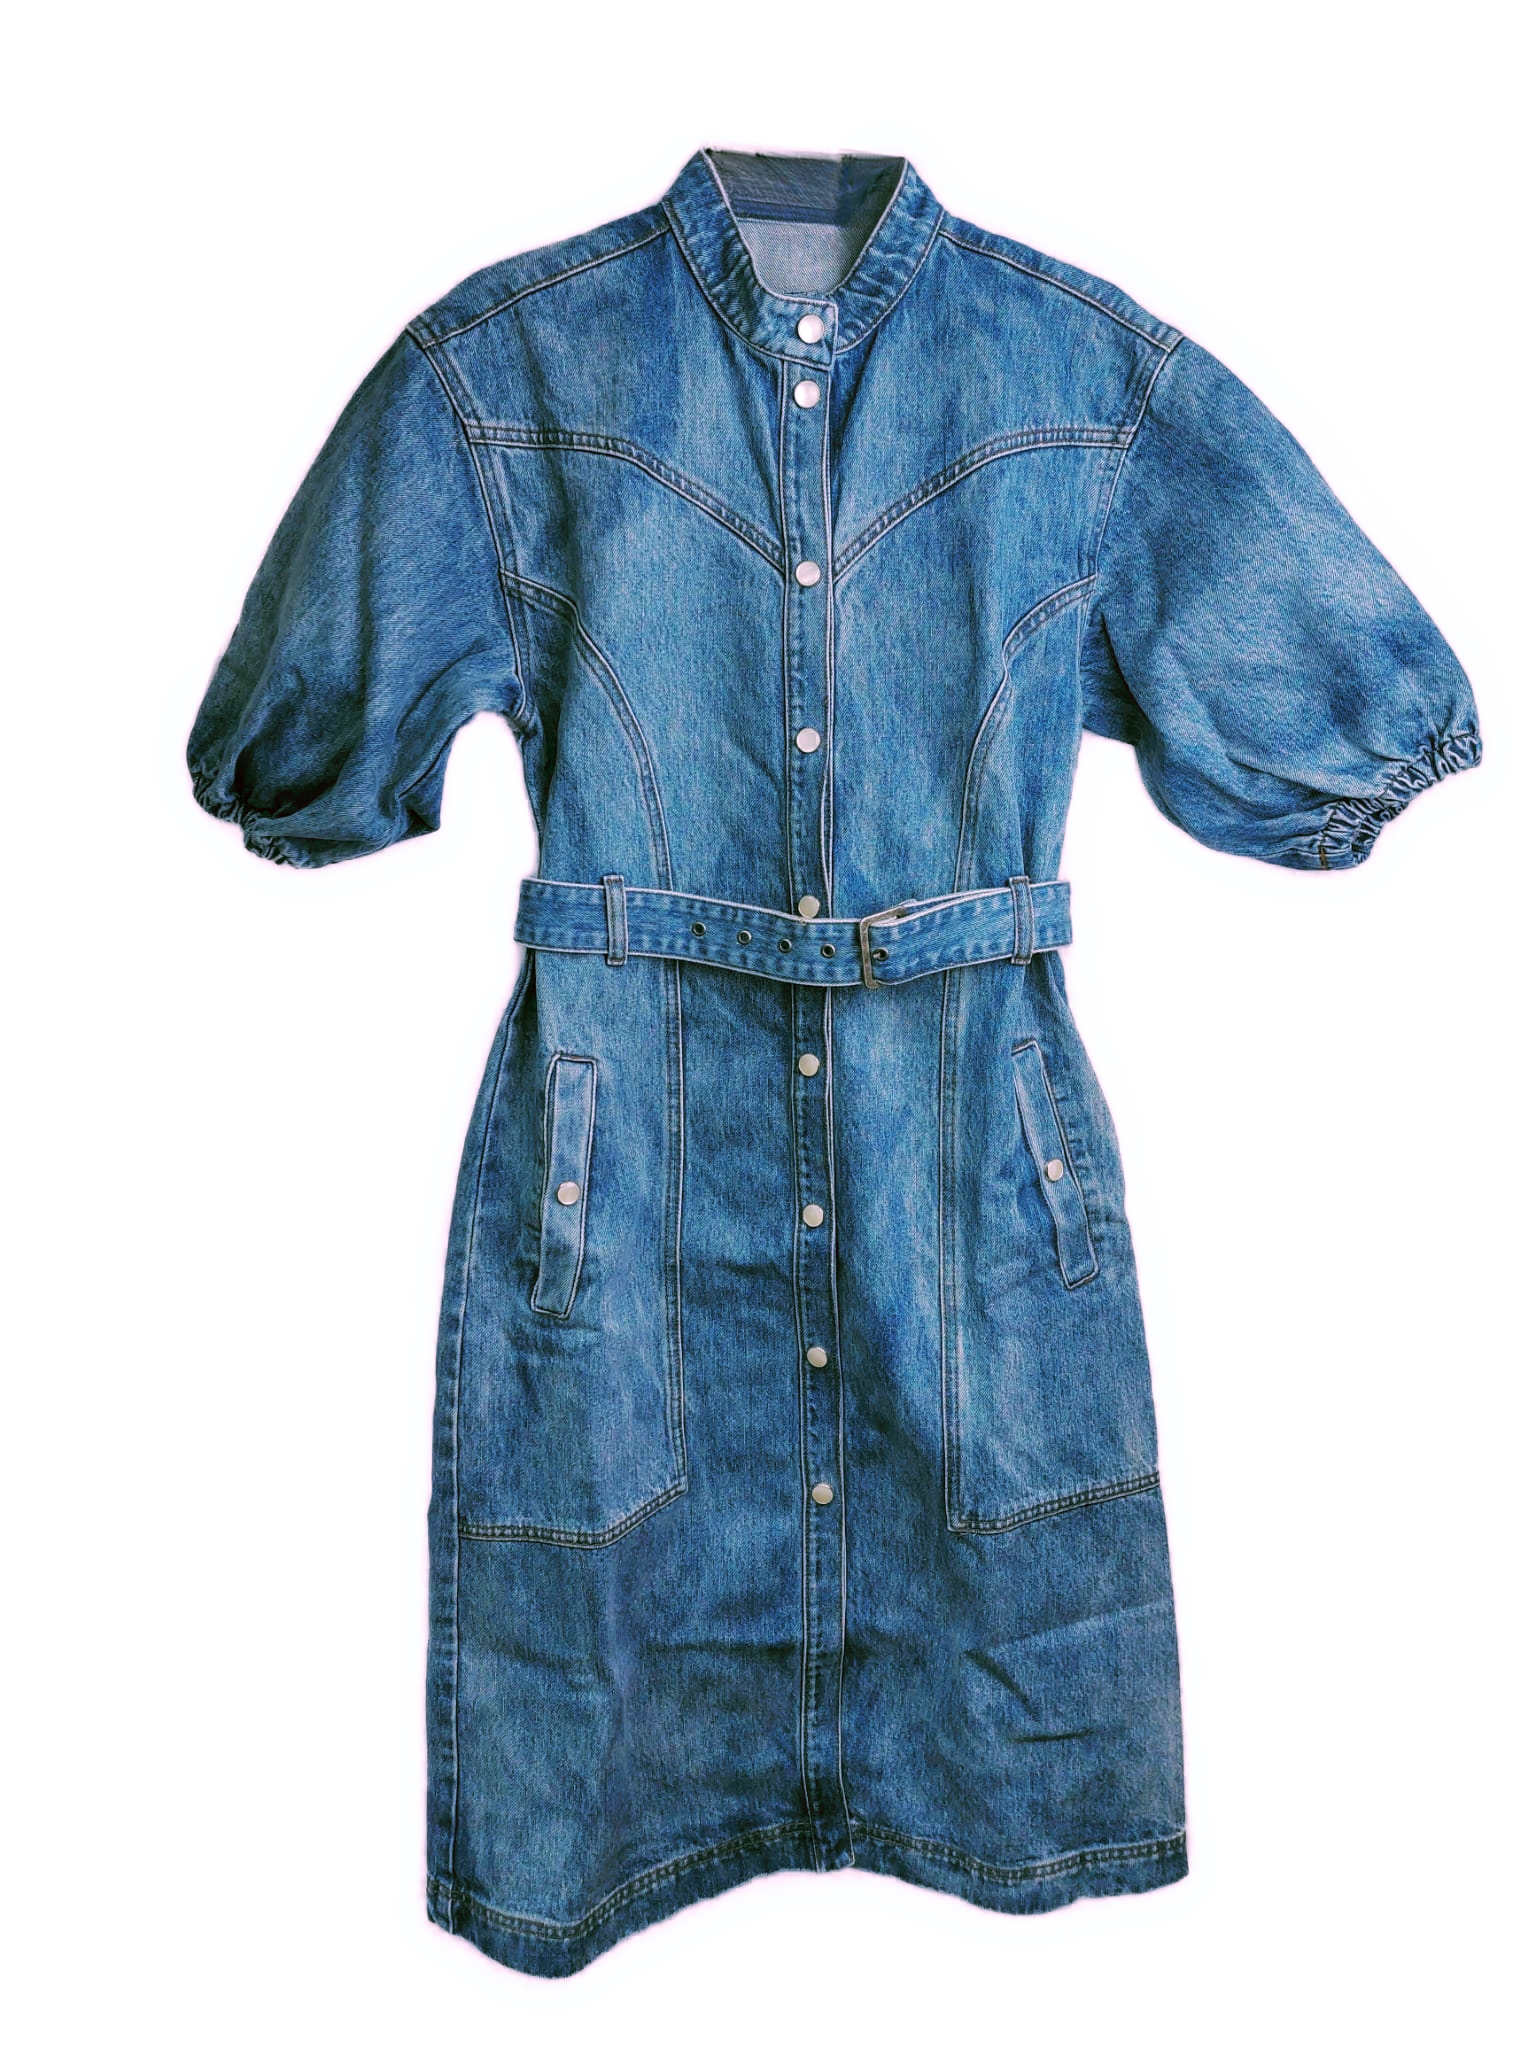 Jeanskleid mit kurzen Ärmeln von Gestuz in Hellblau